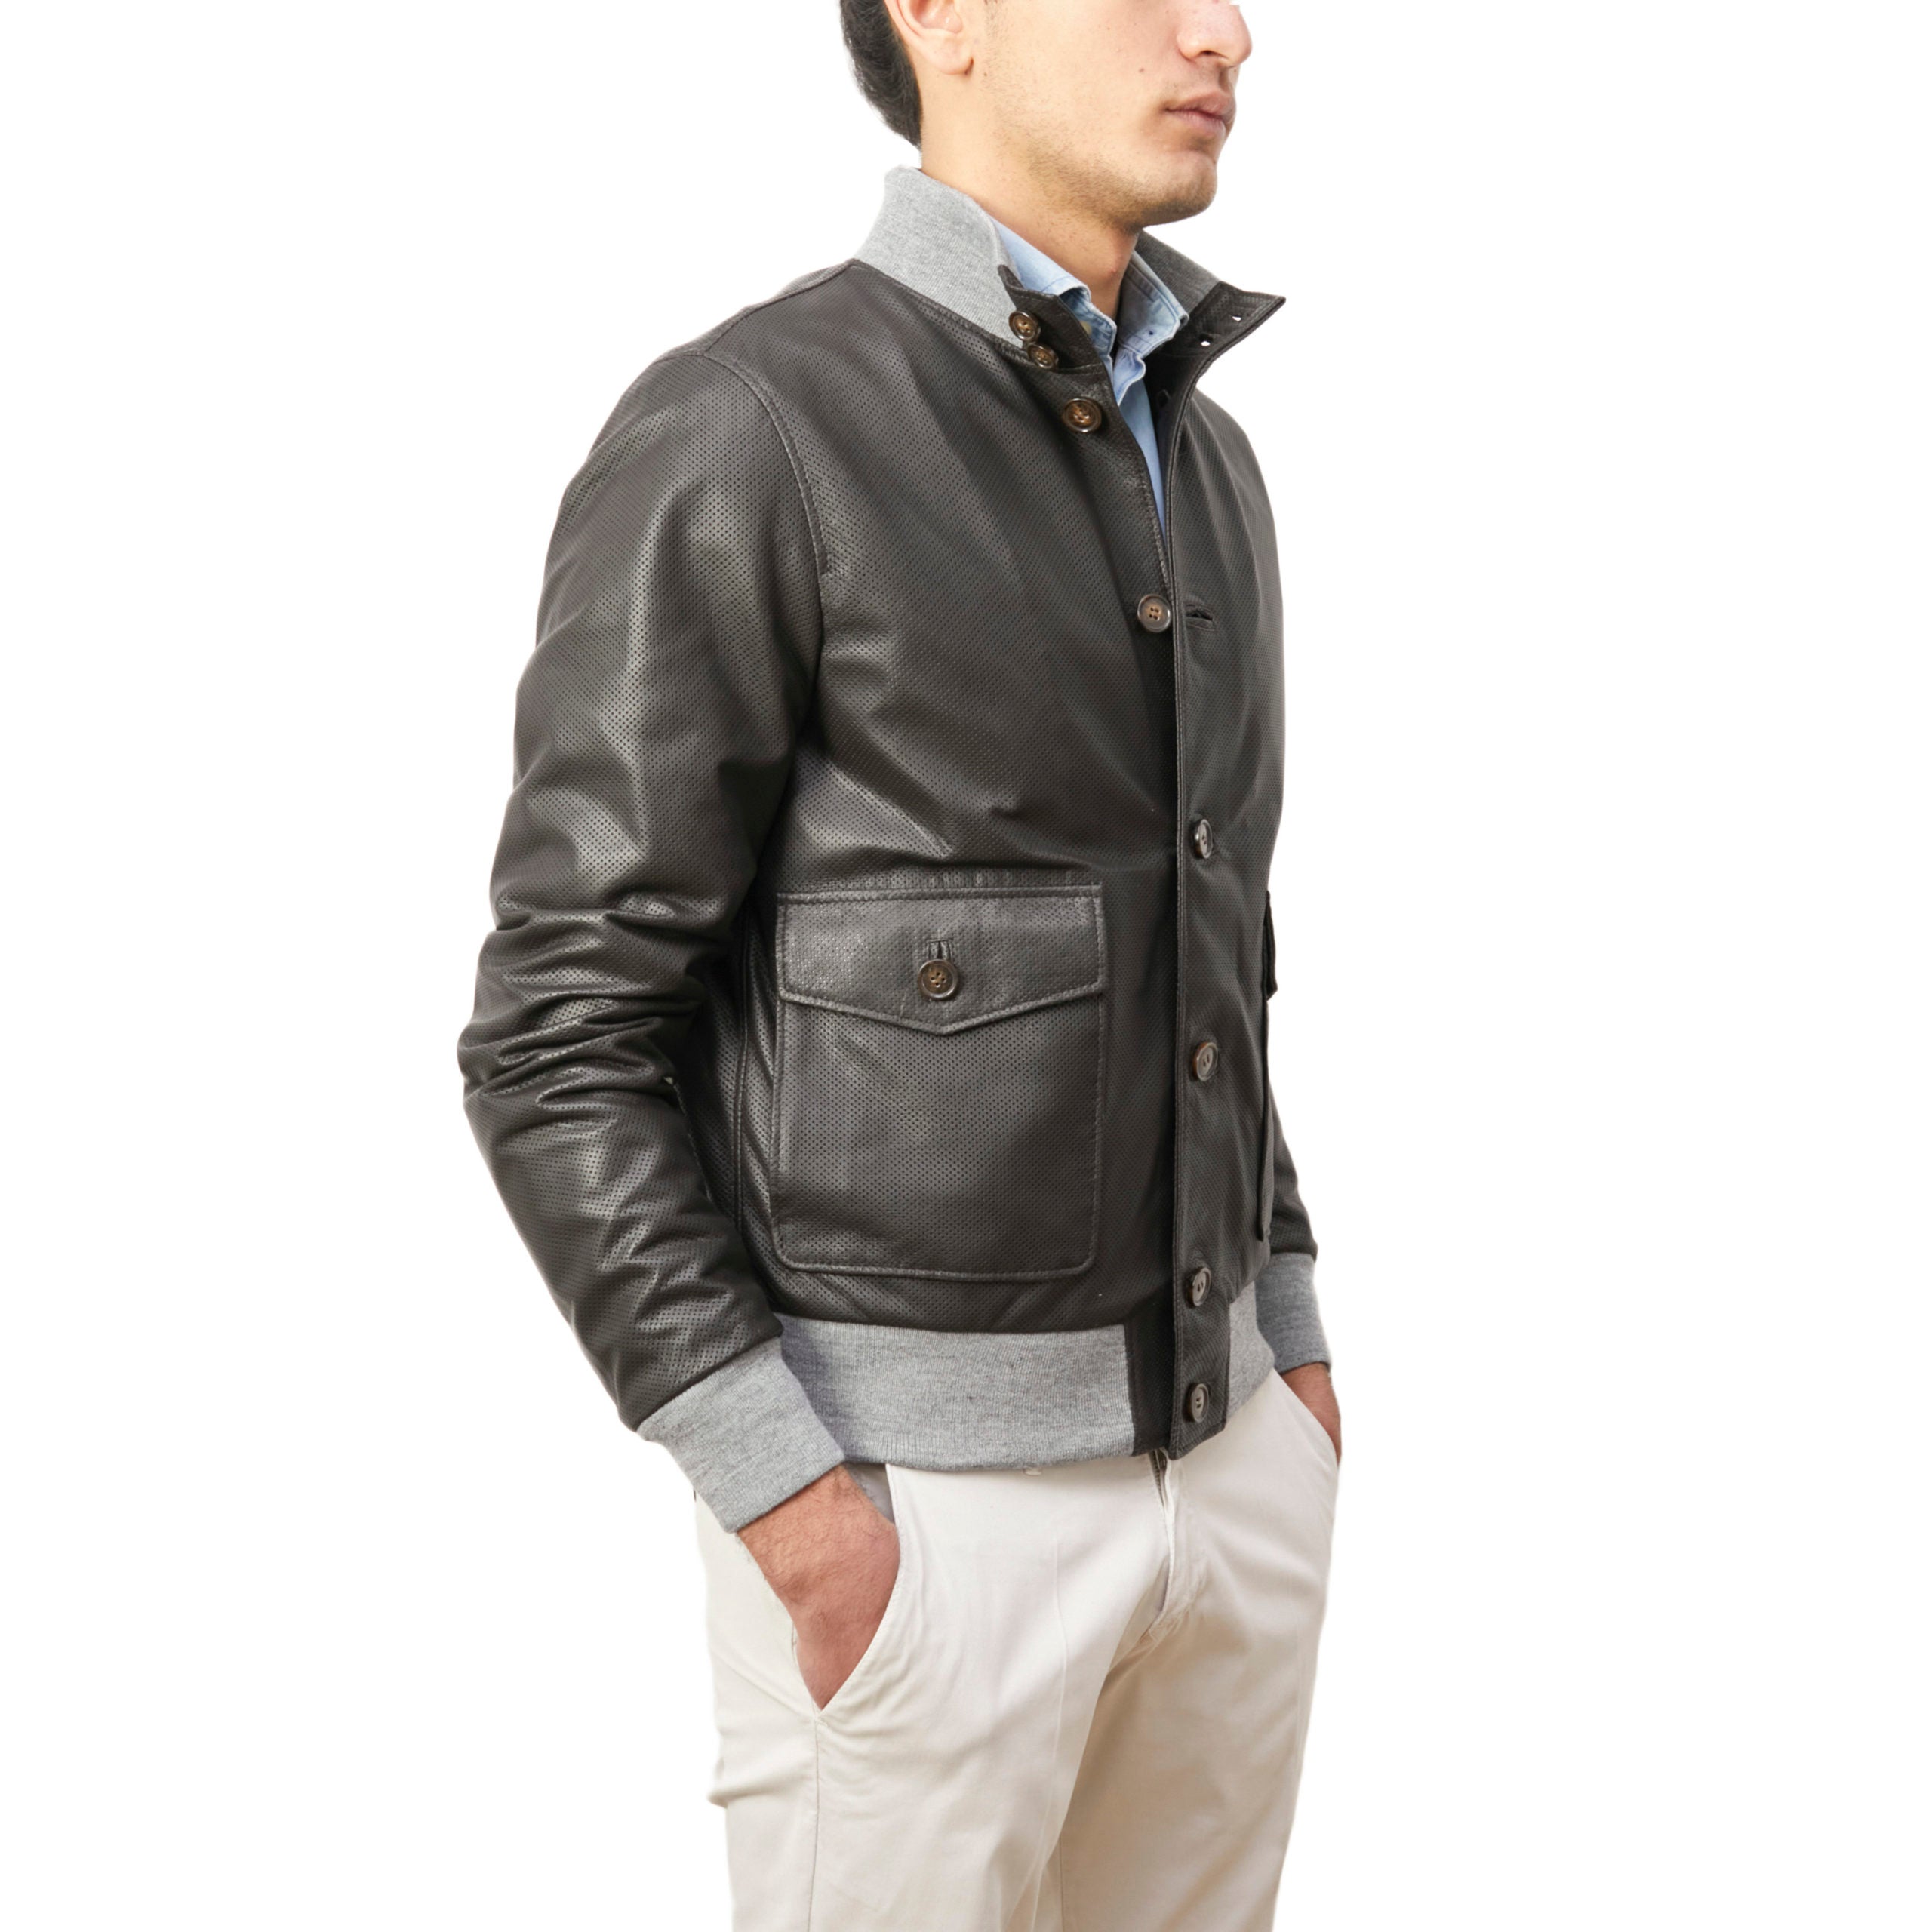 98PNAFM leather jacket